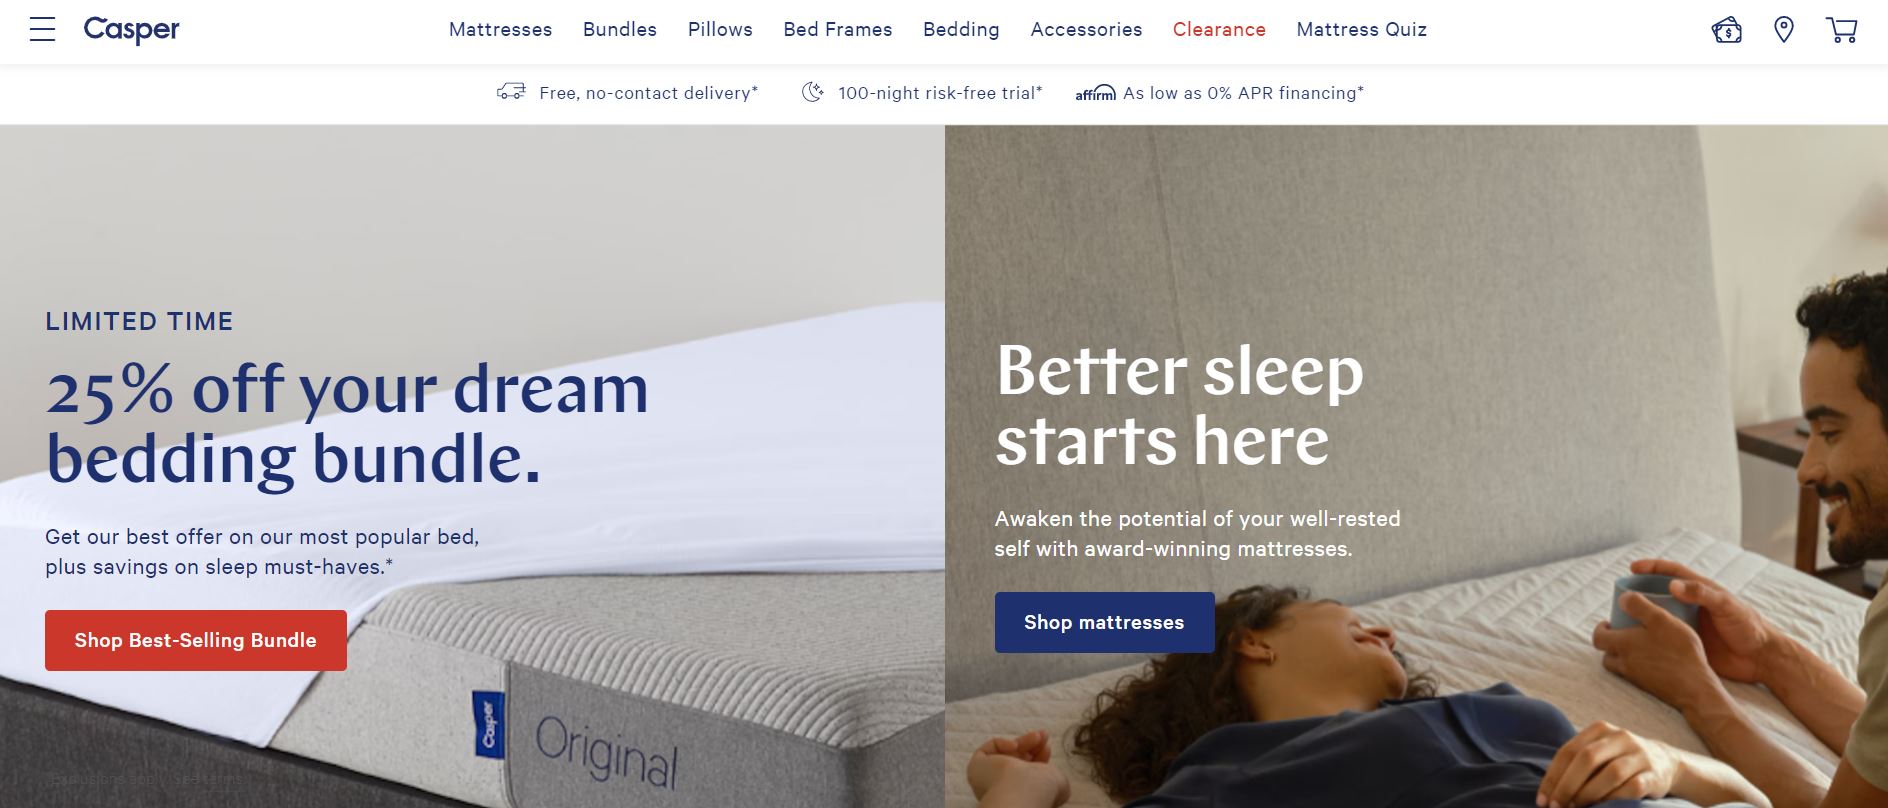 美国新锐睡眠品牌 Casper 招聘兼职试睡员